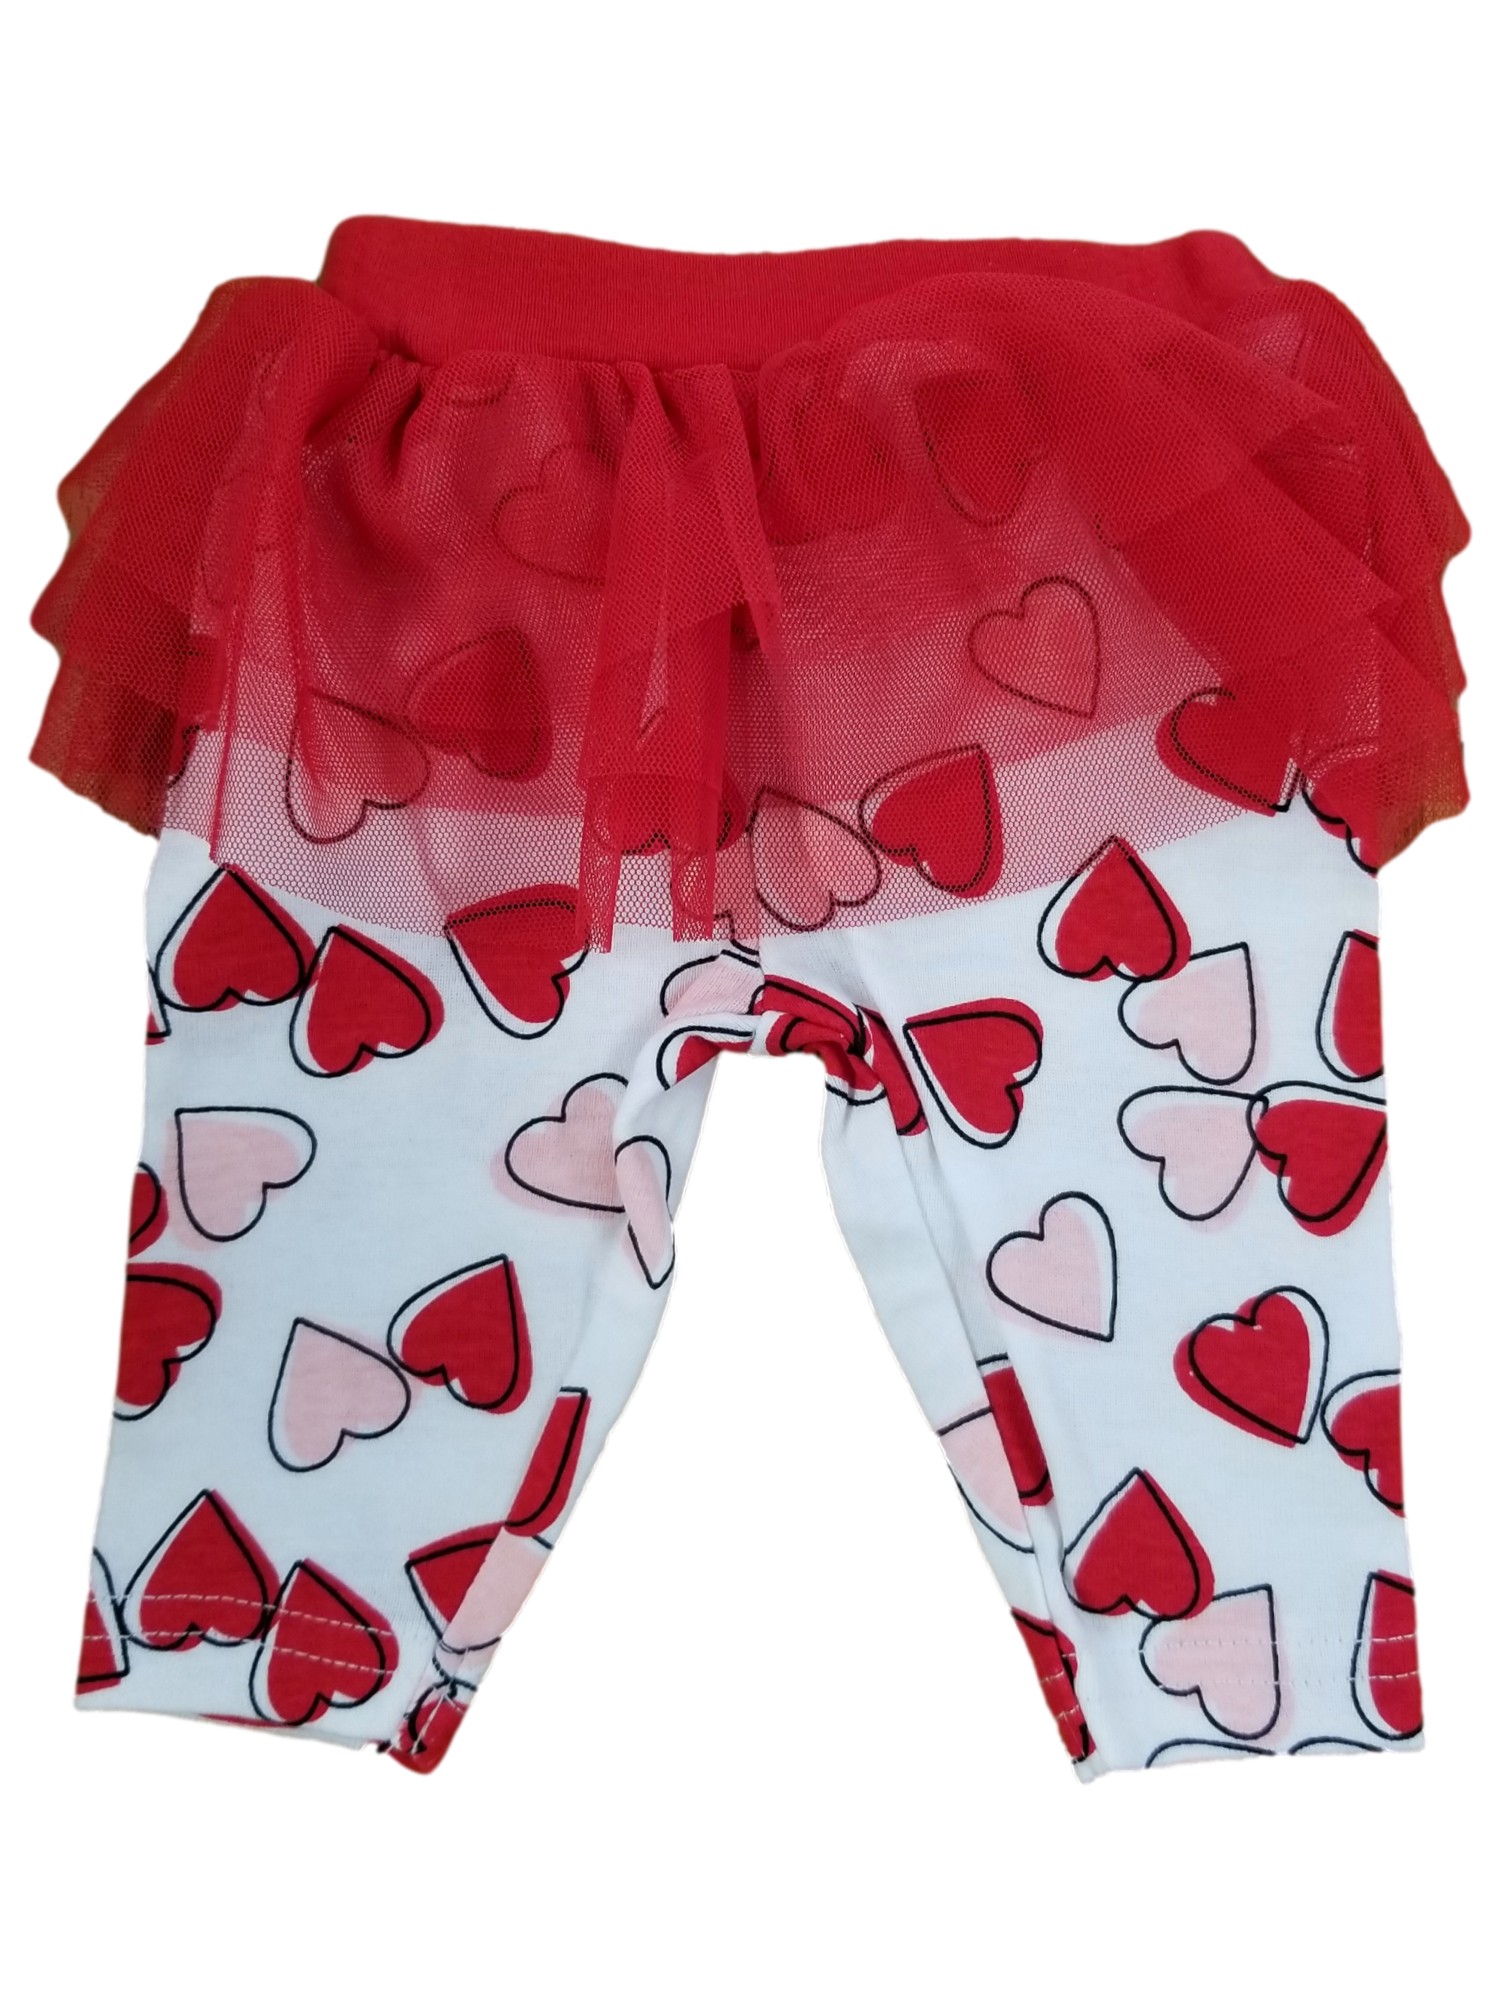 Carter's Infant Girls Mommy's Favorite Valentine Bodysuit Tulle Tutu Leggings